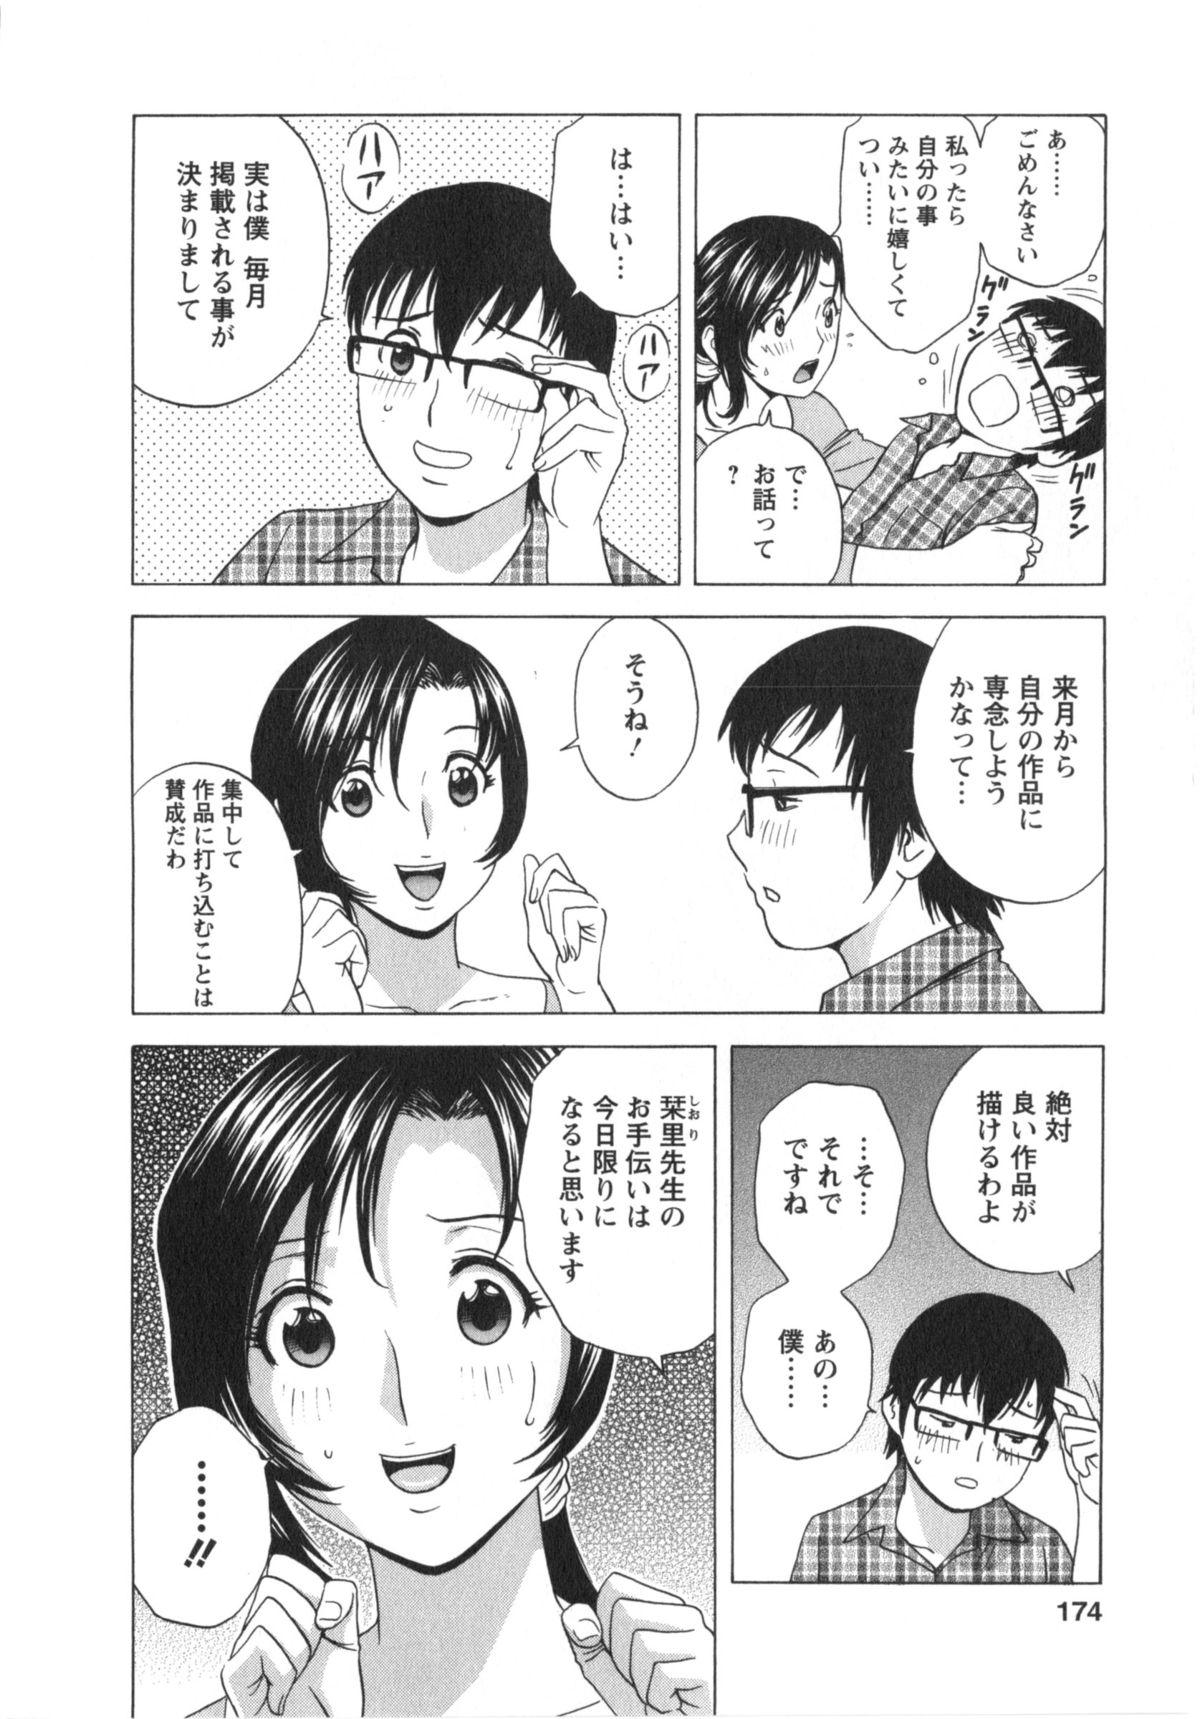 Manga no youna Hitozuma to no Hibi - Days with Married Women such as Comics. 174